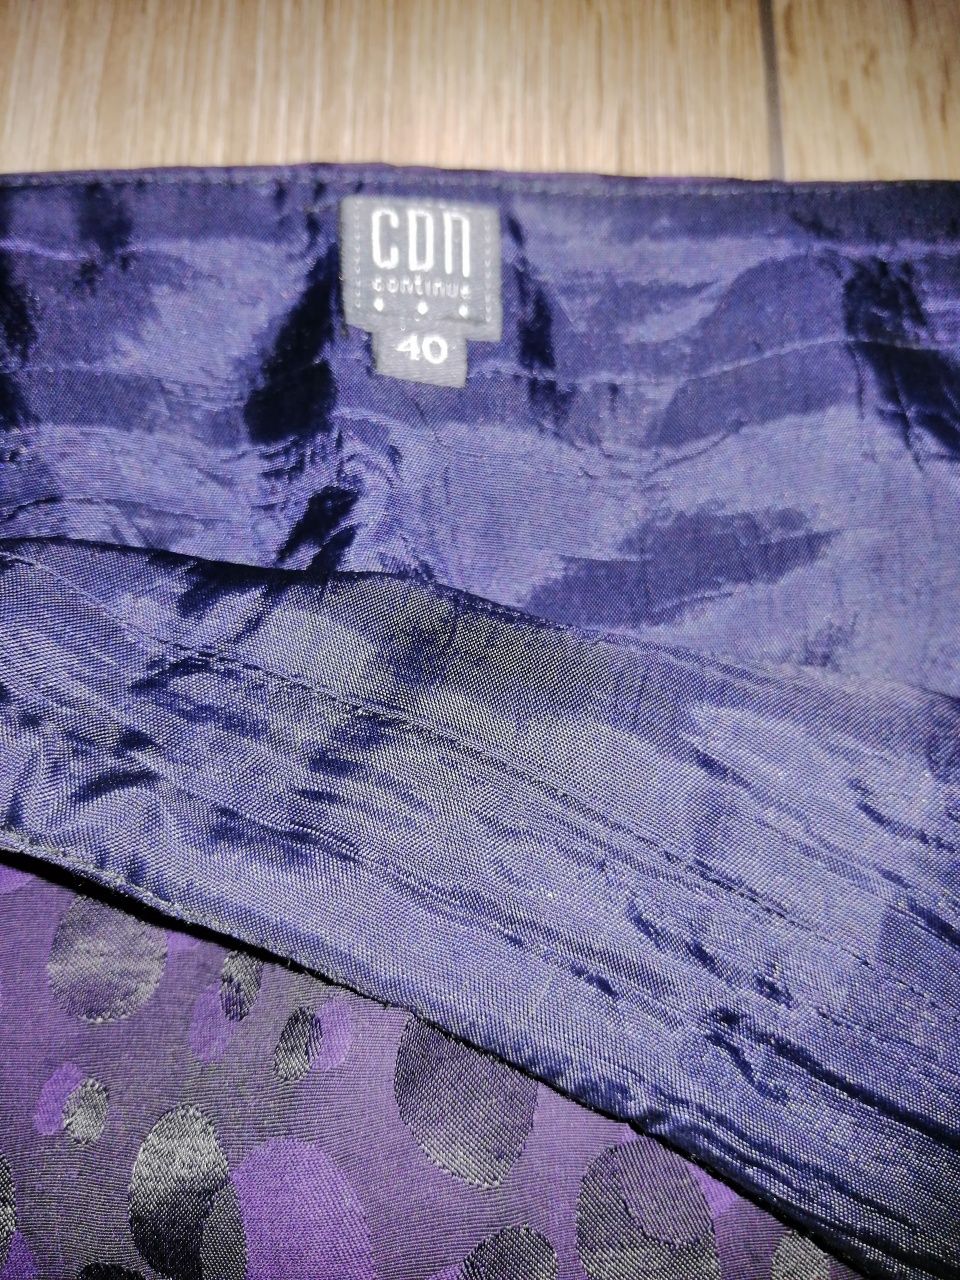 Spódnica CDN 40 fioletowo czarna ołówkowa